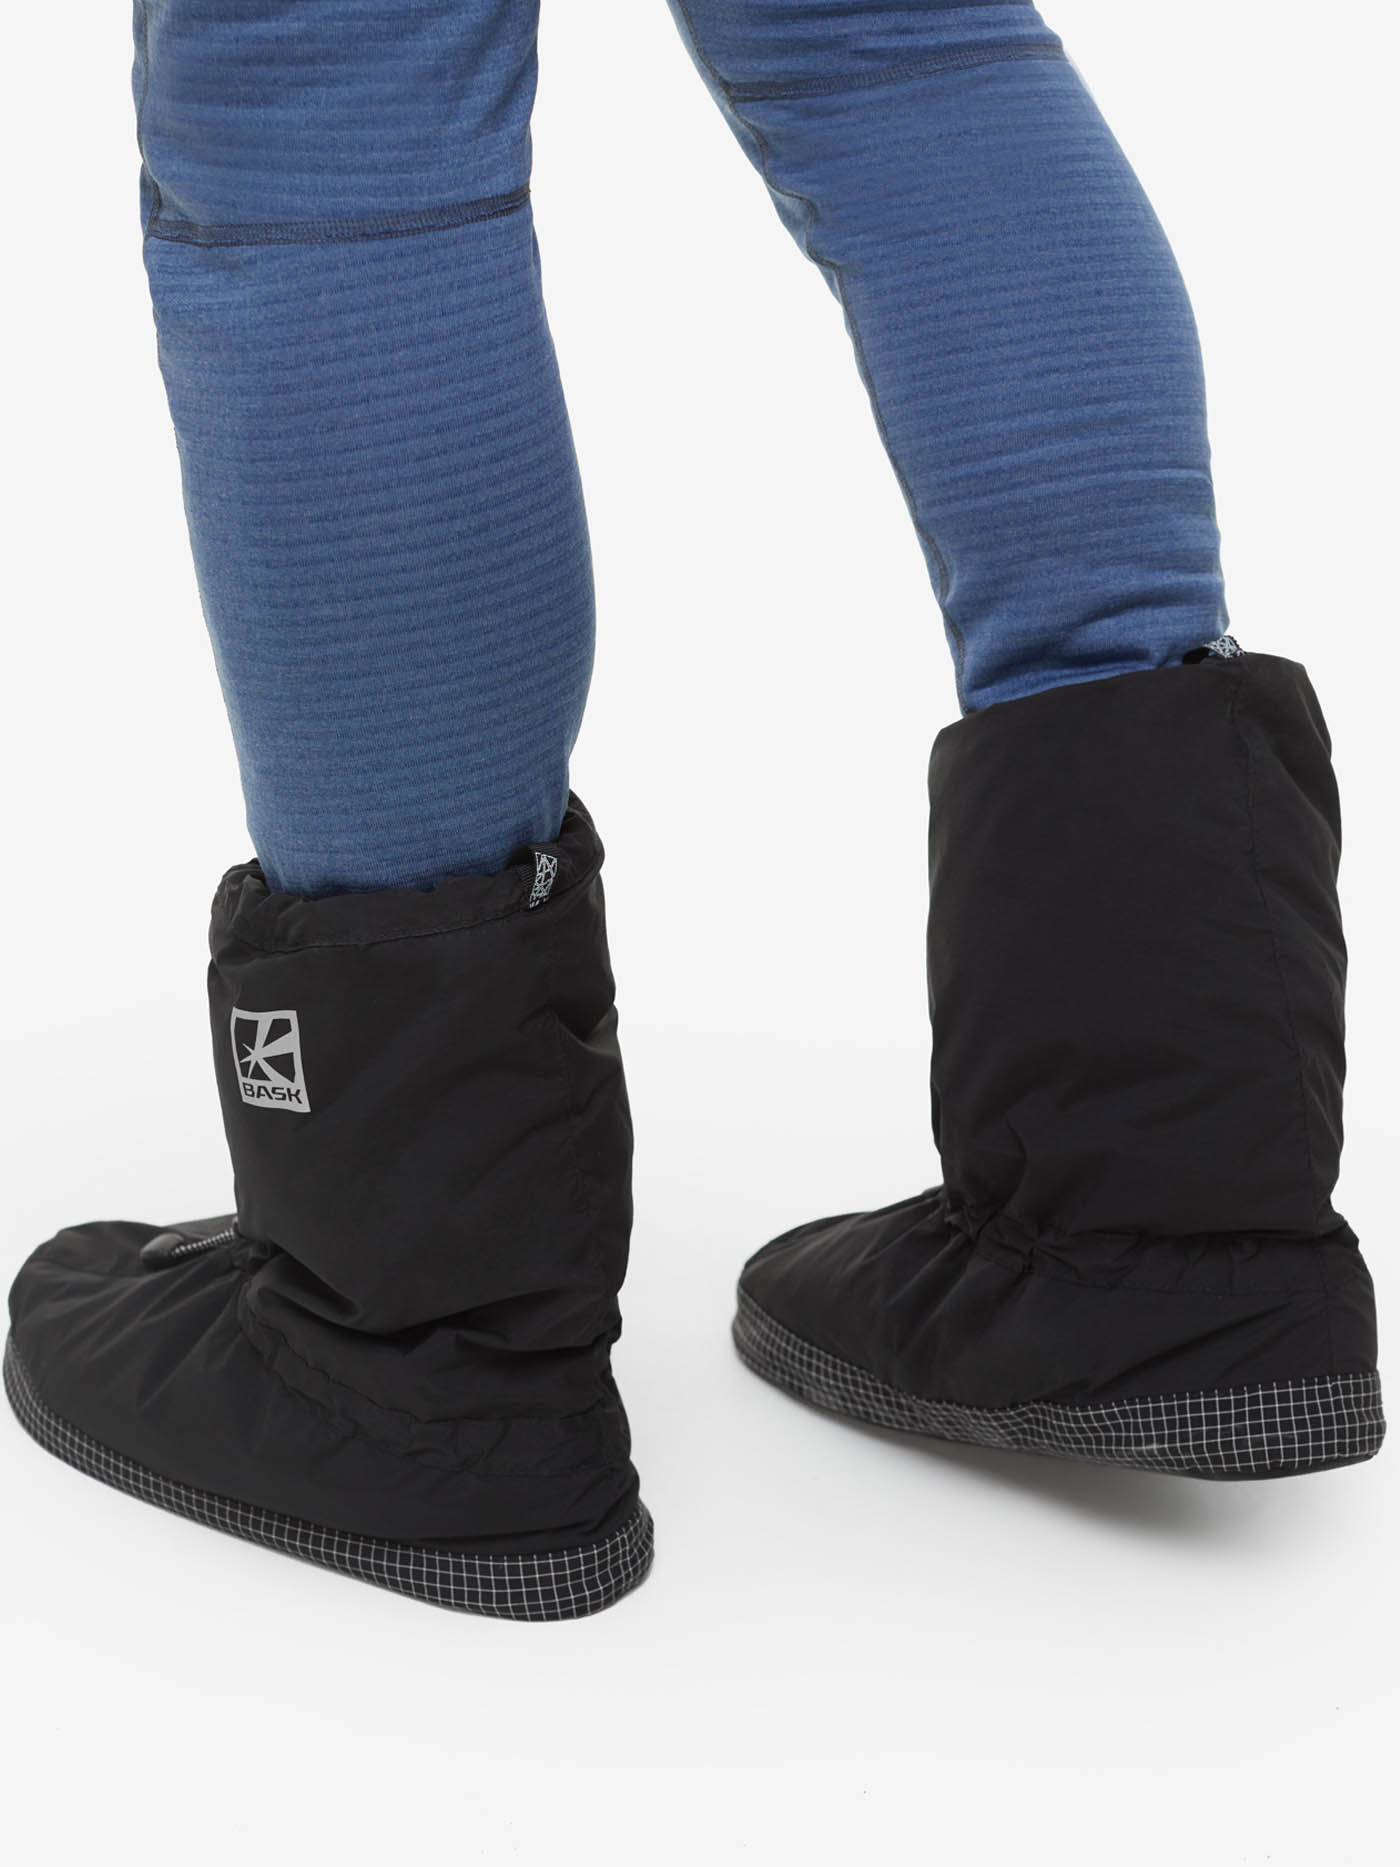 Носки BASK, размер S, цвет черный 21203-9009-S Tundra foot - фото 4